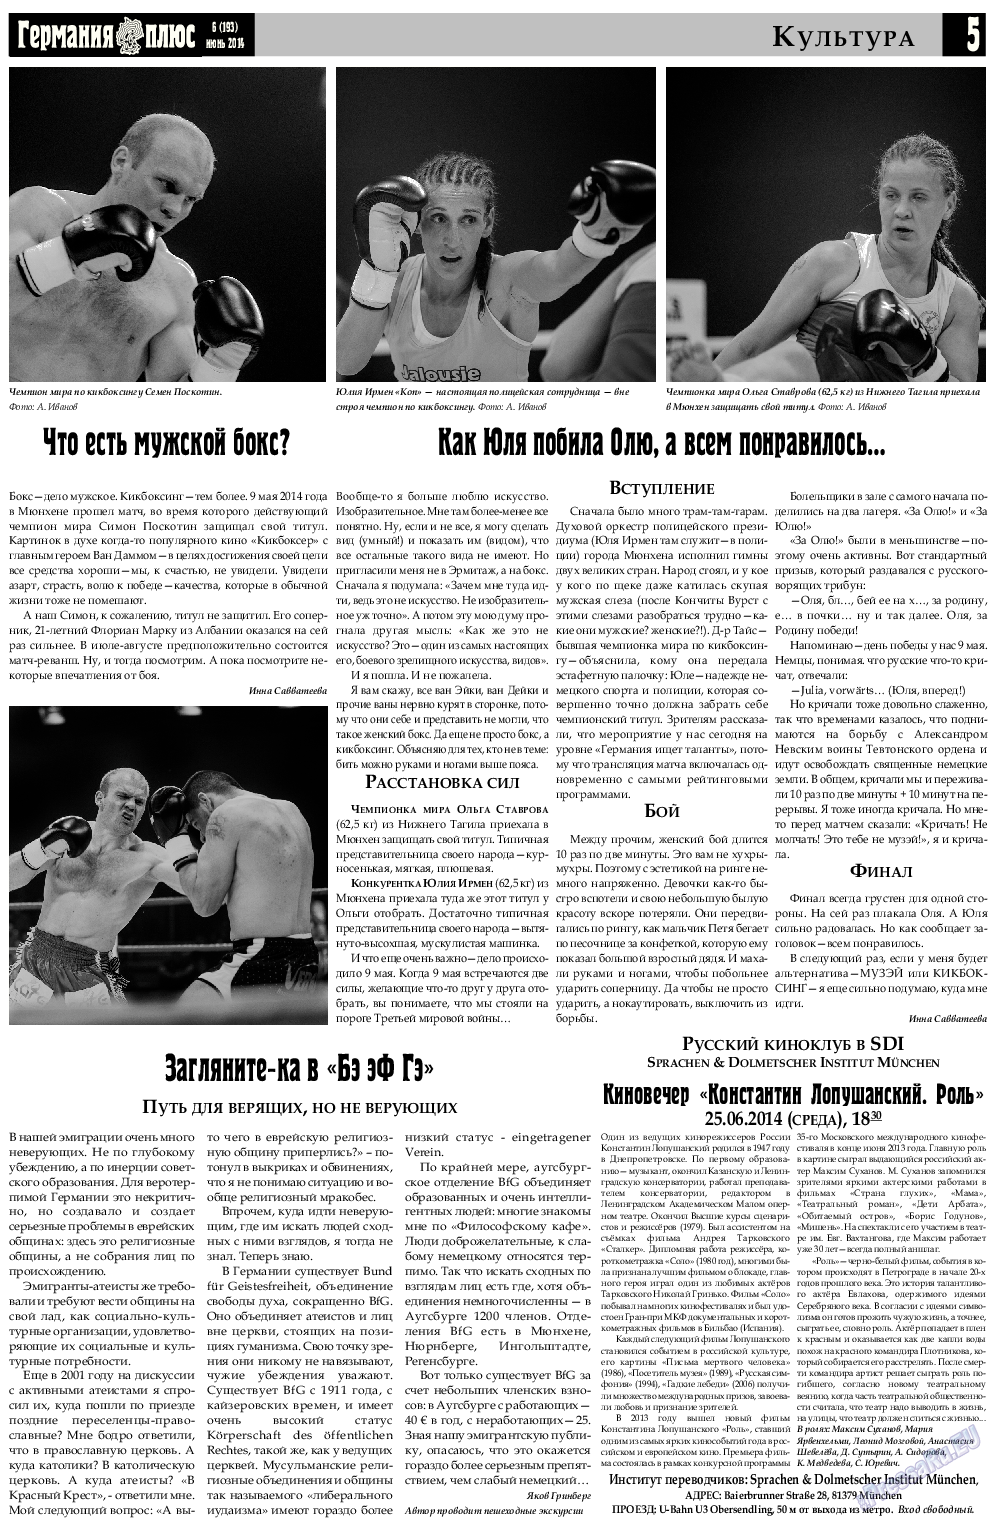 Германия плюс, газета. 2014 №6 стр.5